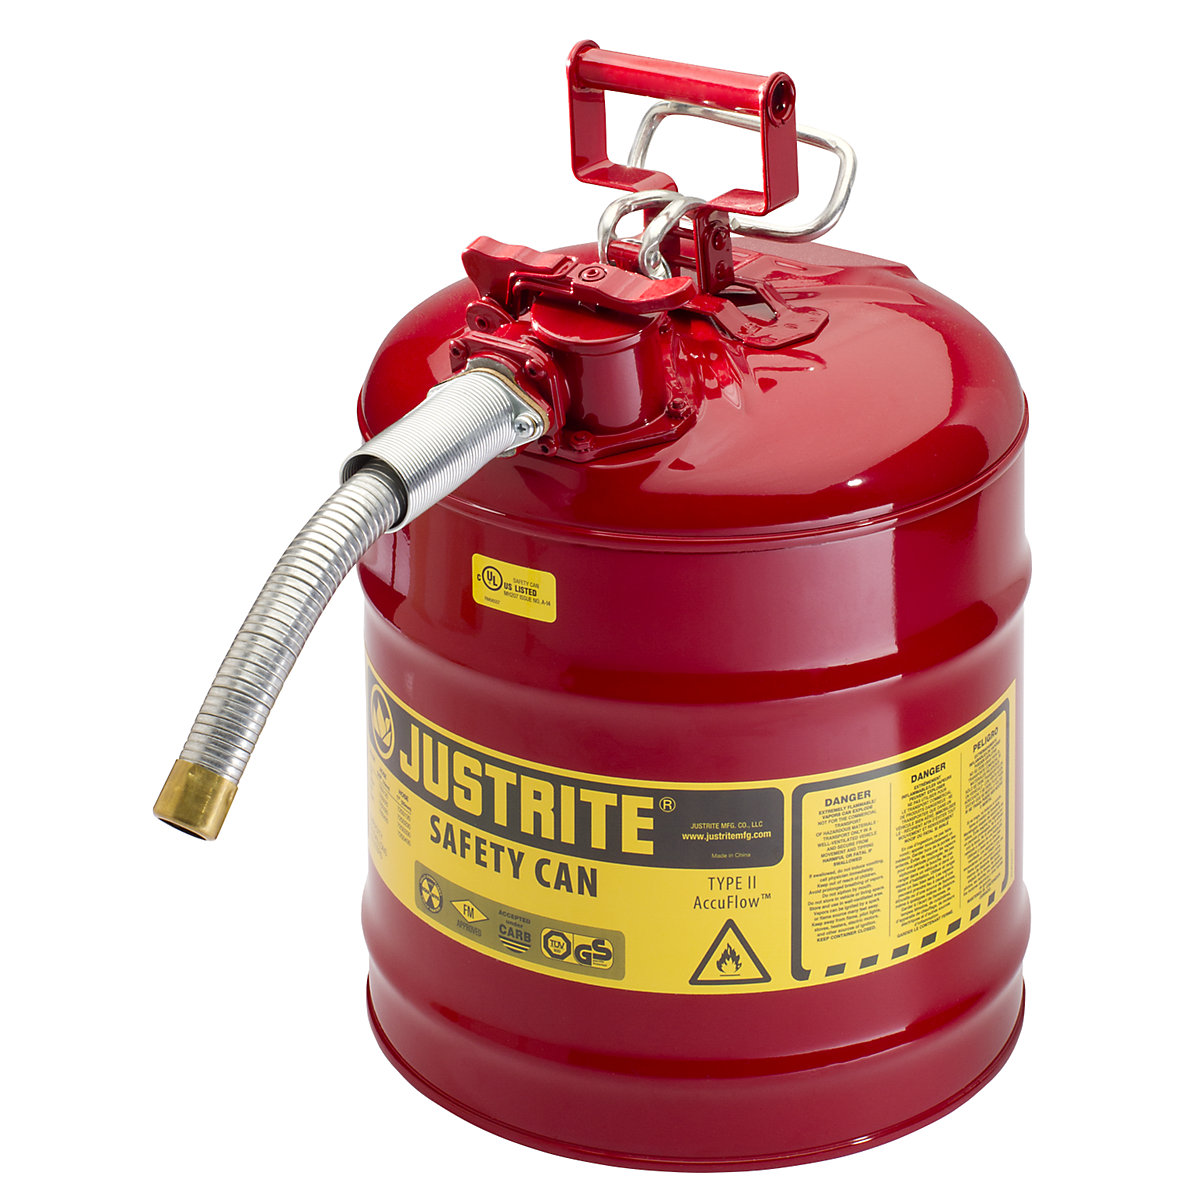 Contenitore di sicurezza con tubo flessibile in metallo – Justrite